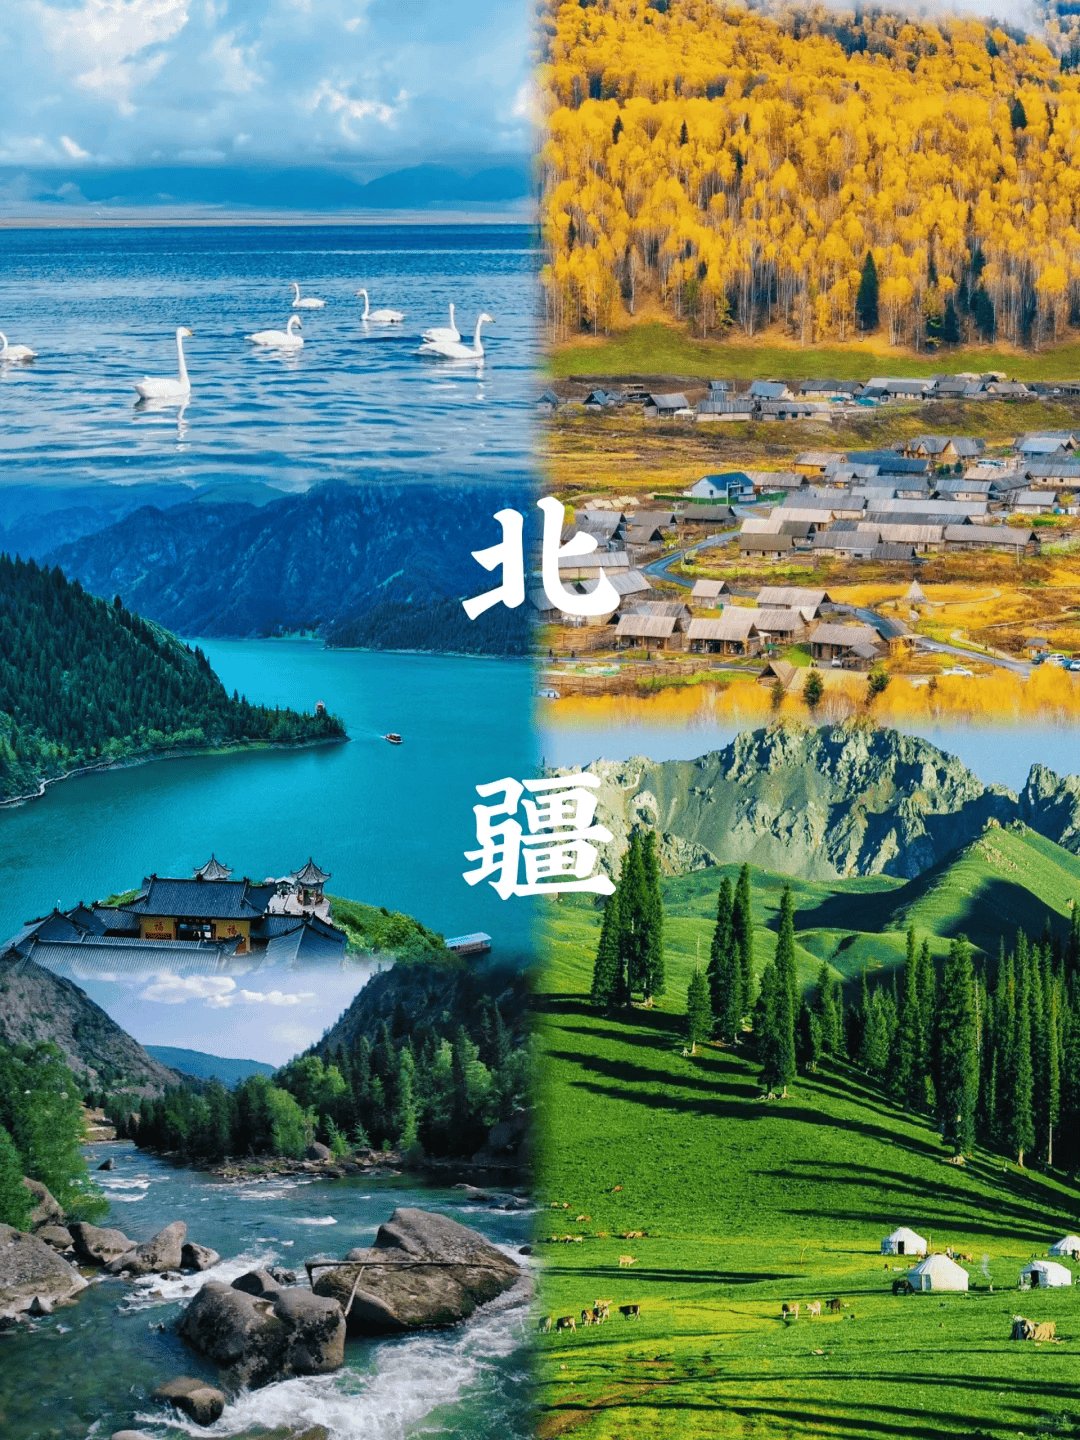 新疆旅游路线,新疆北部有哪些景点好玩,新疆北部旅游路线攻略